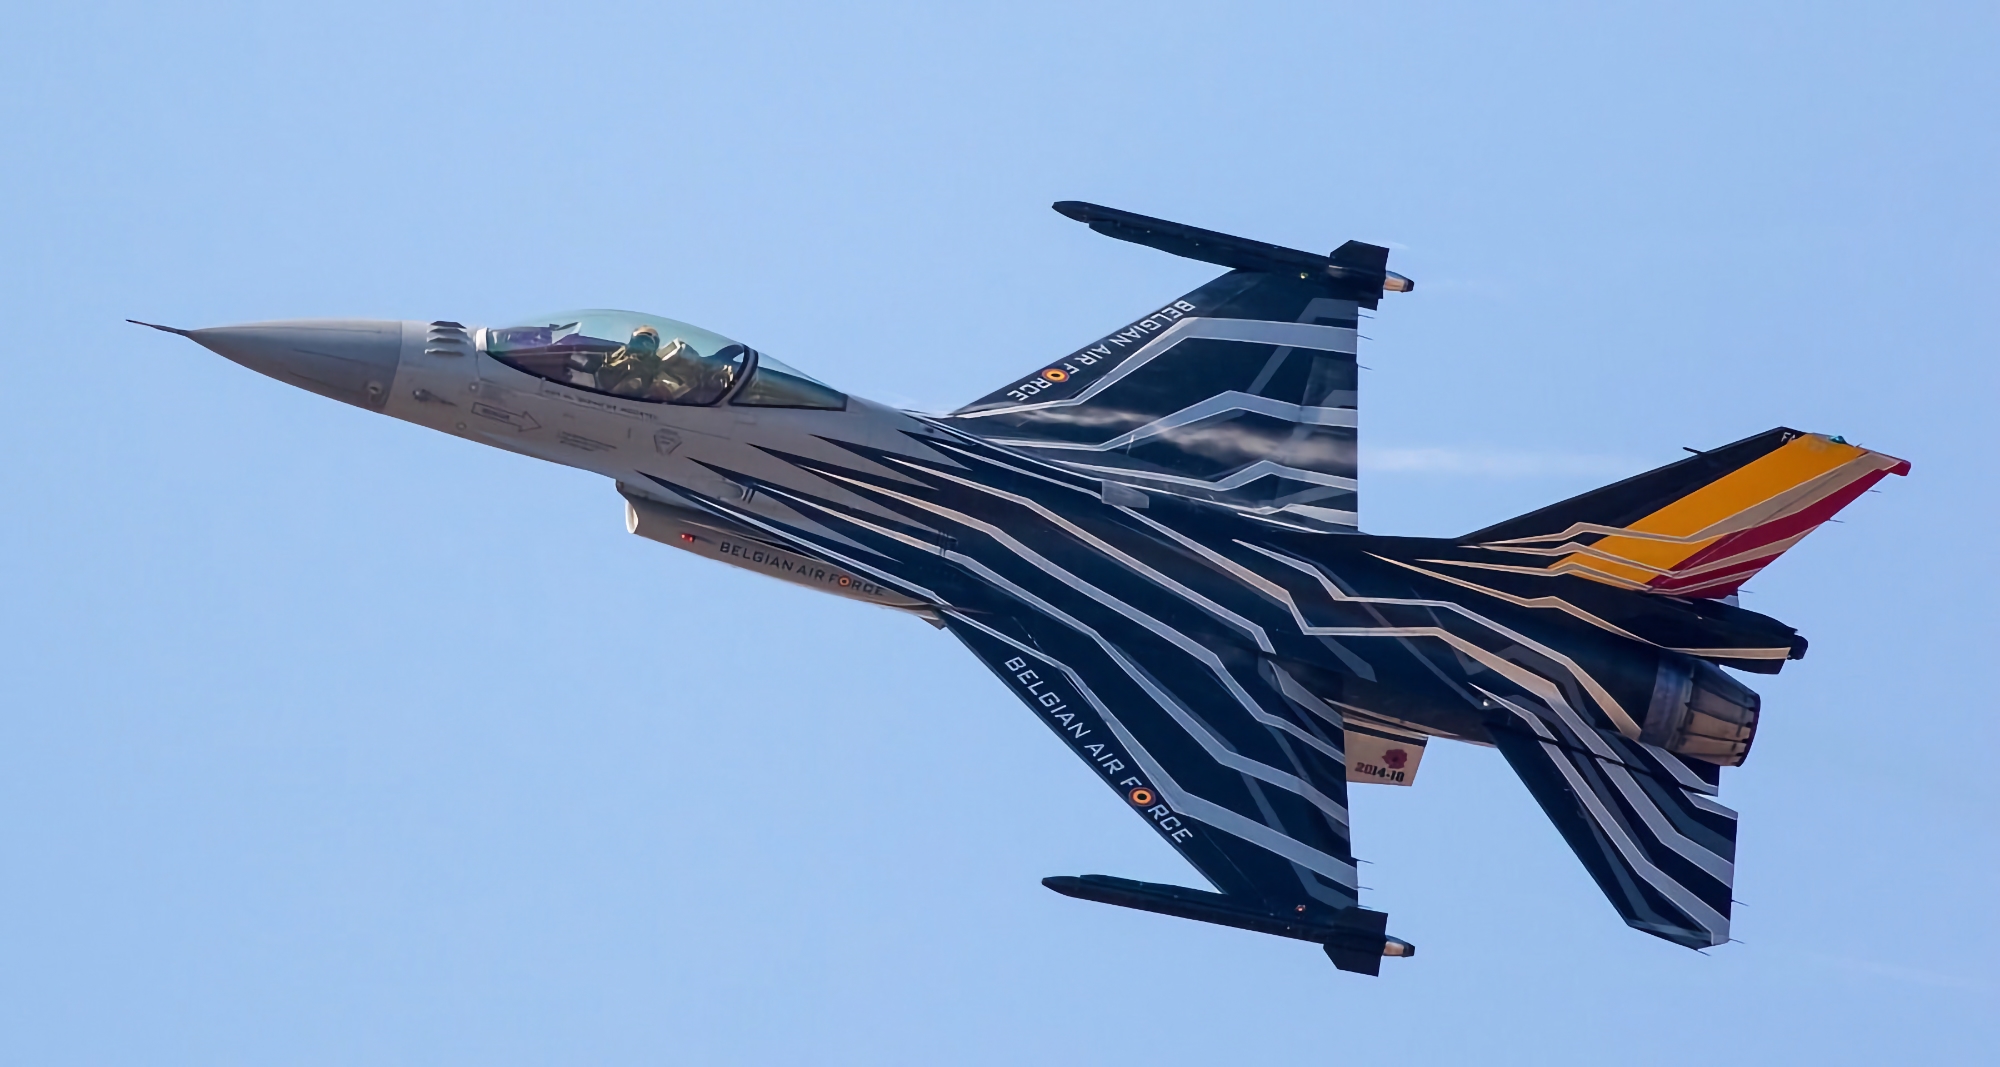 Wann Belgien seine F-16 Fighting Falcon-Kampfjets an die Ukraine verlegen will